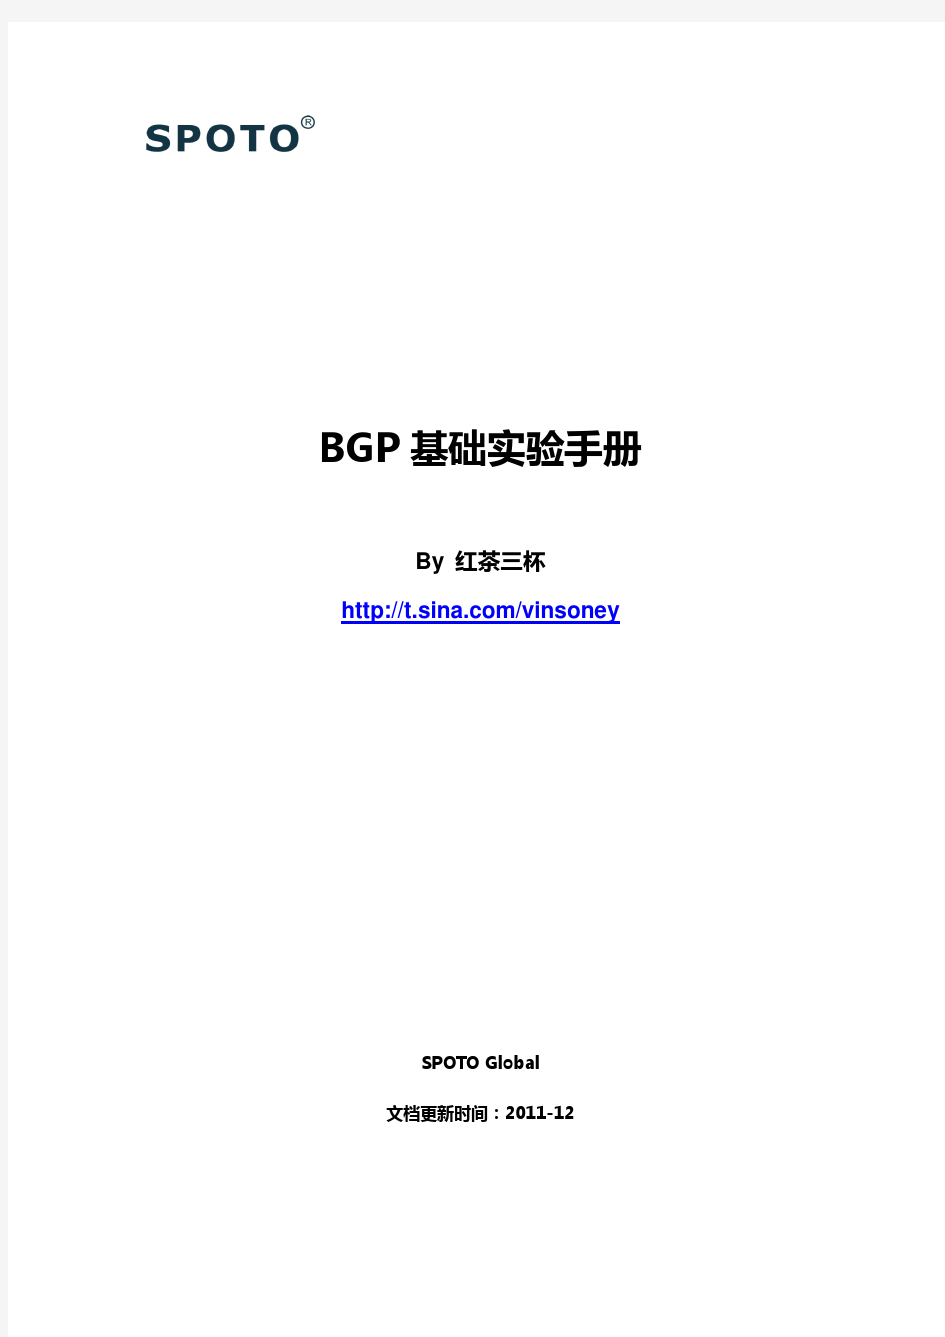 【CCNP实验手册】红茶三杯 BGP基础实验手册